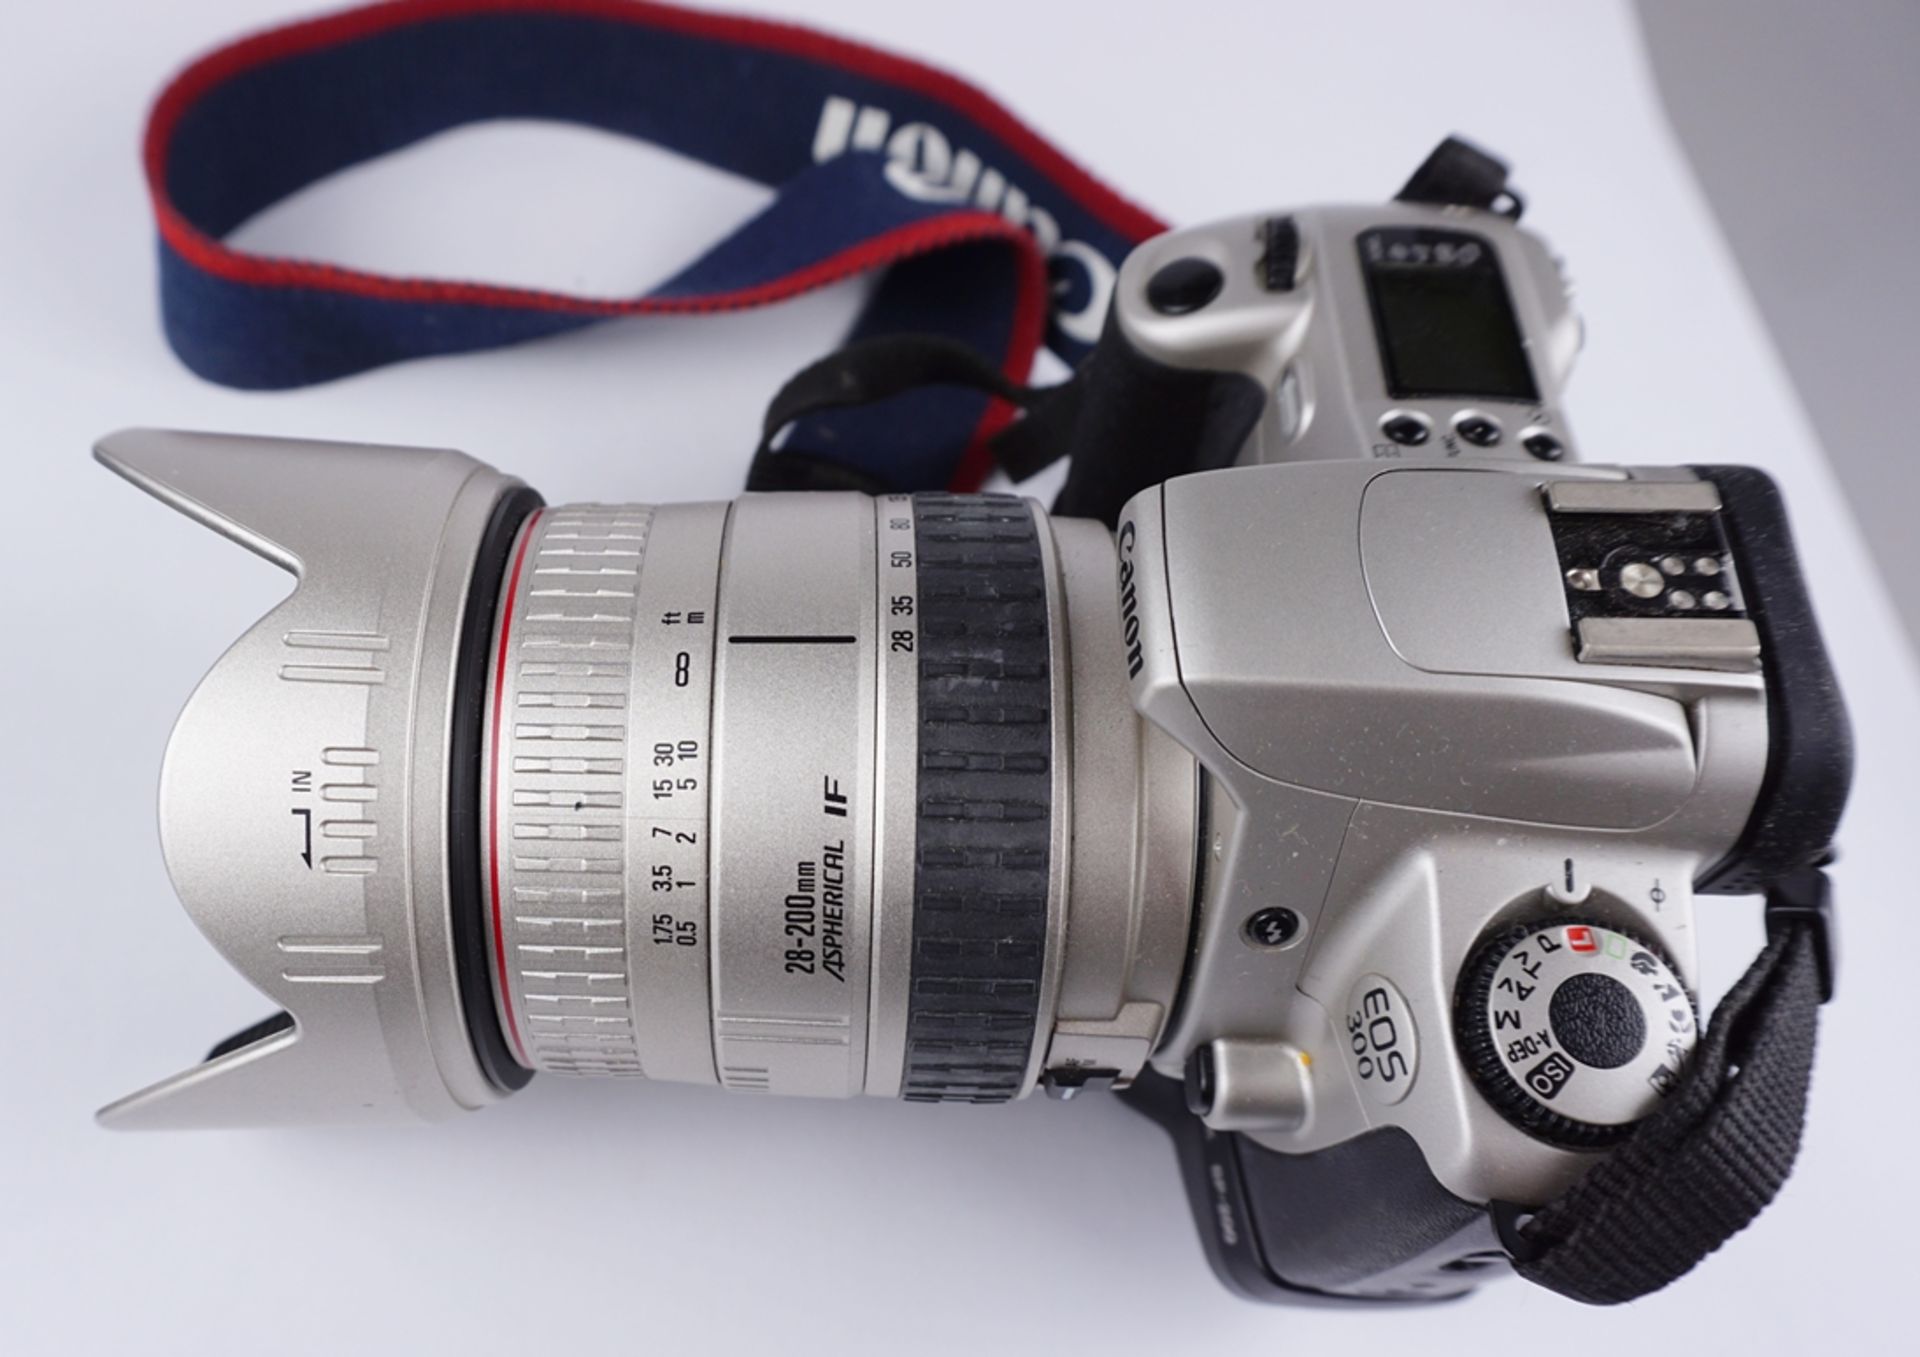 Spiegelreflexkamera Canon EOS 300 und 3 Objektive, dazu Blitzlicht Exakta 300 AF - Image 2 of 4